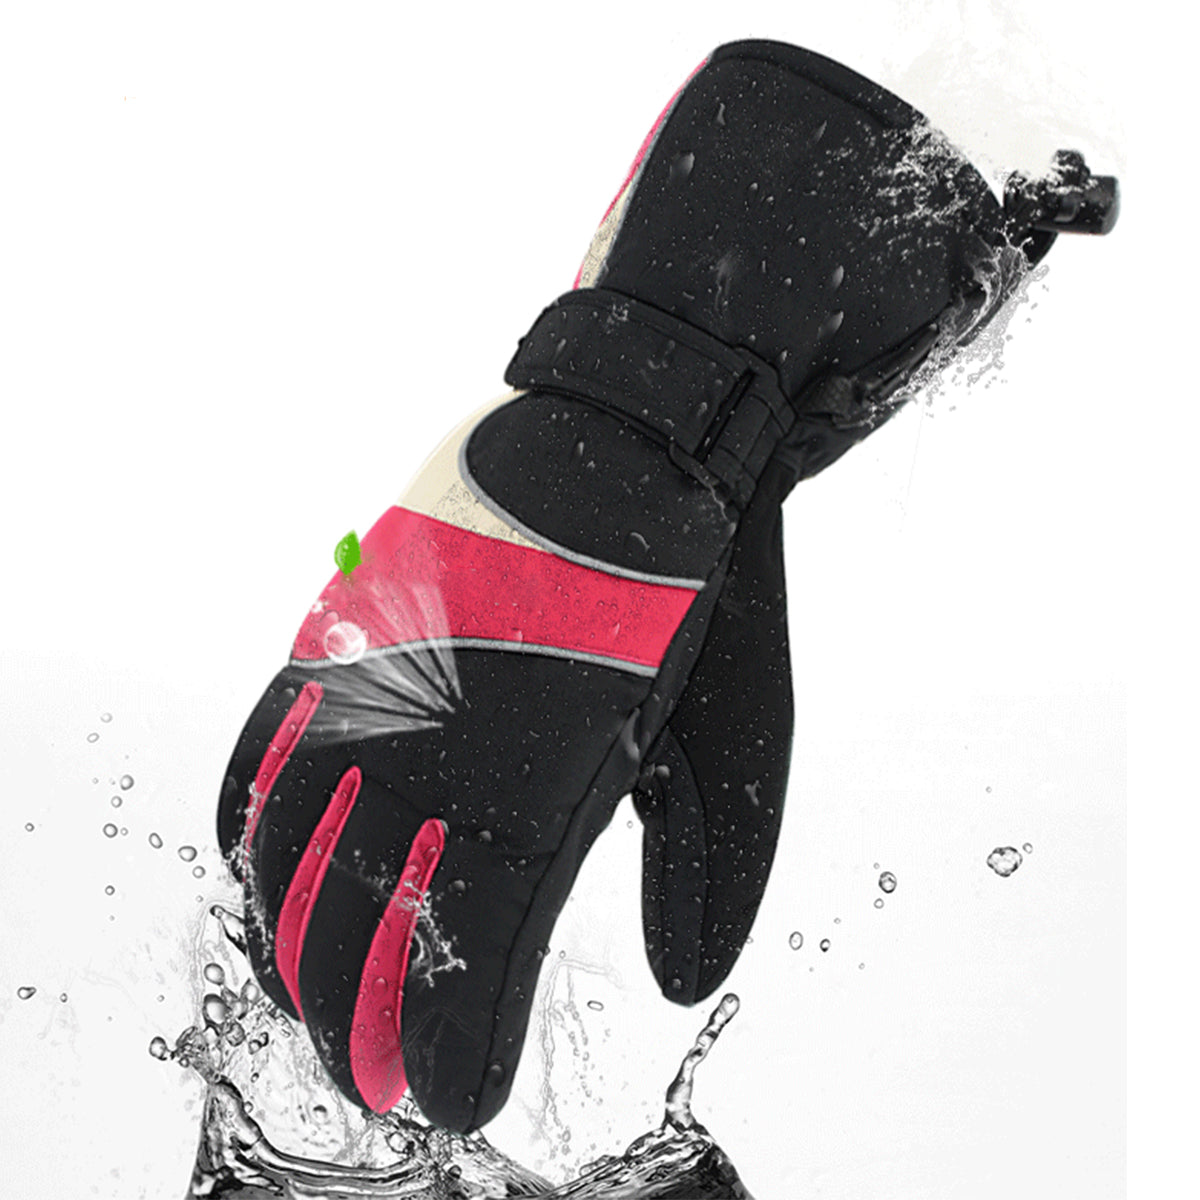 Maroon Electric Heated Gloves Motorcycle Winter Waterproof Thermal Outdoor Skiing Warmer